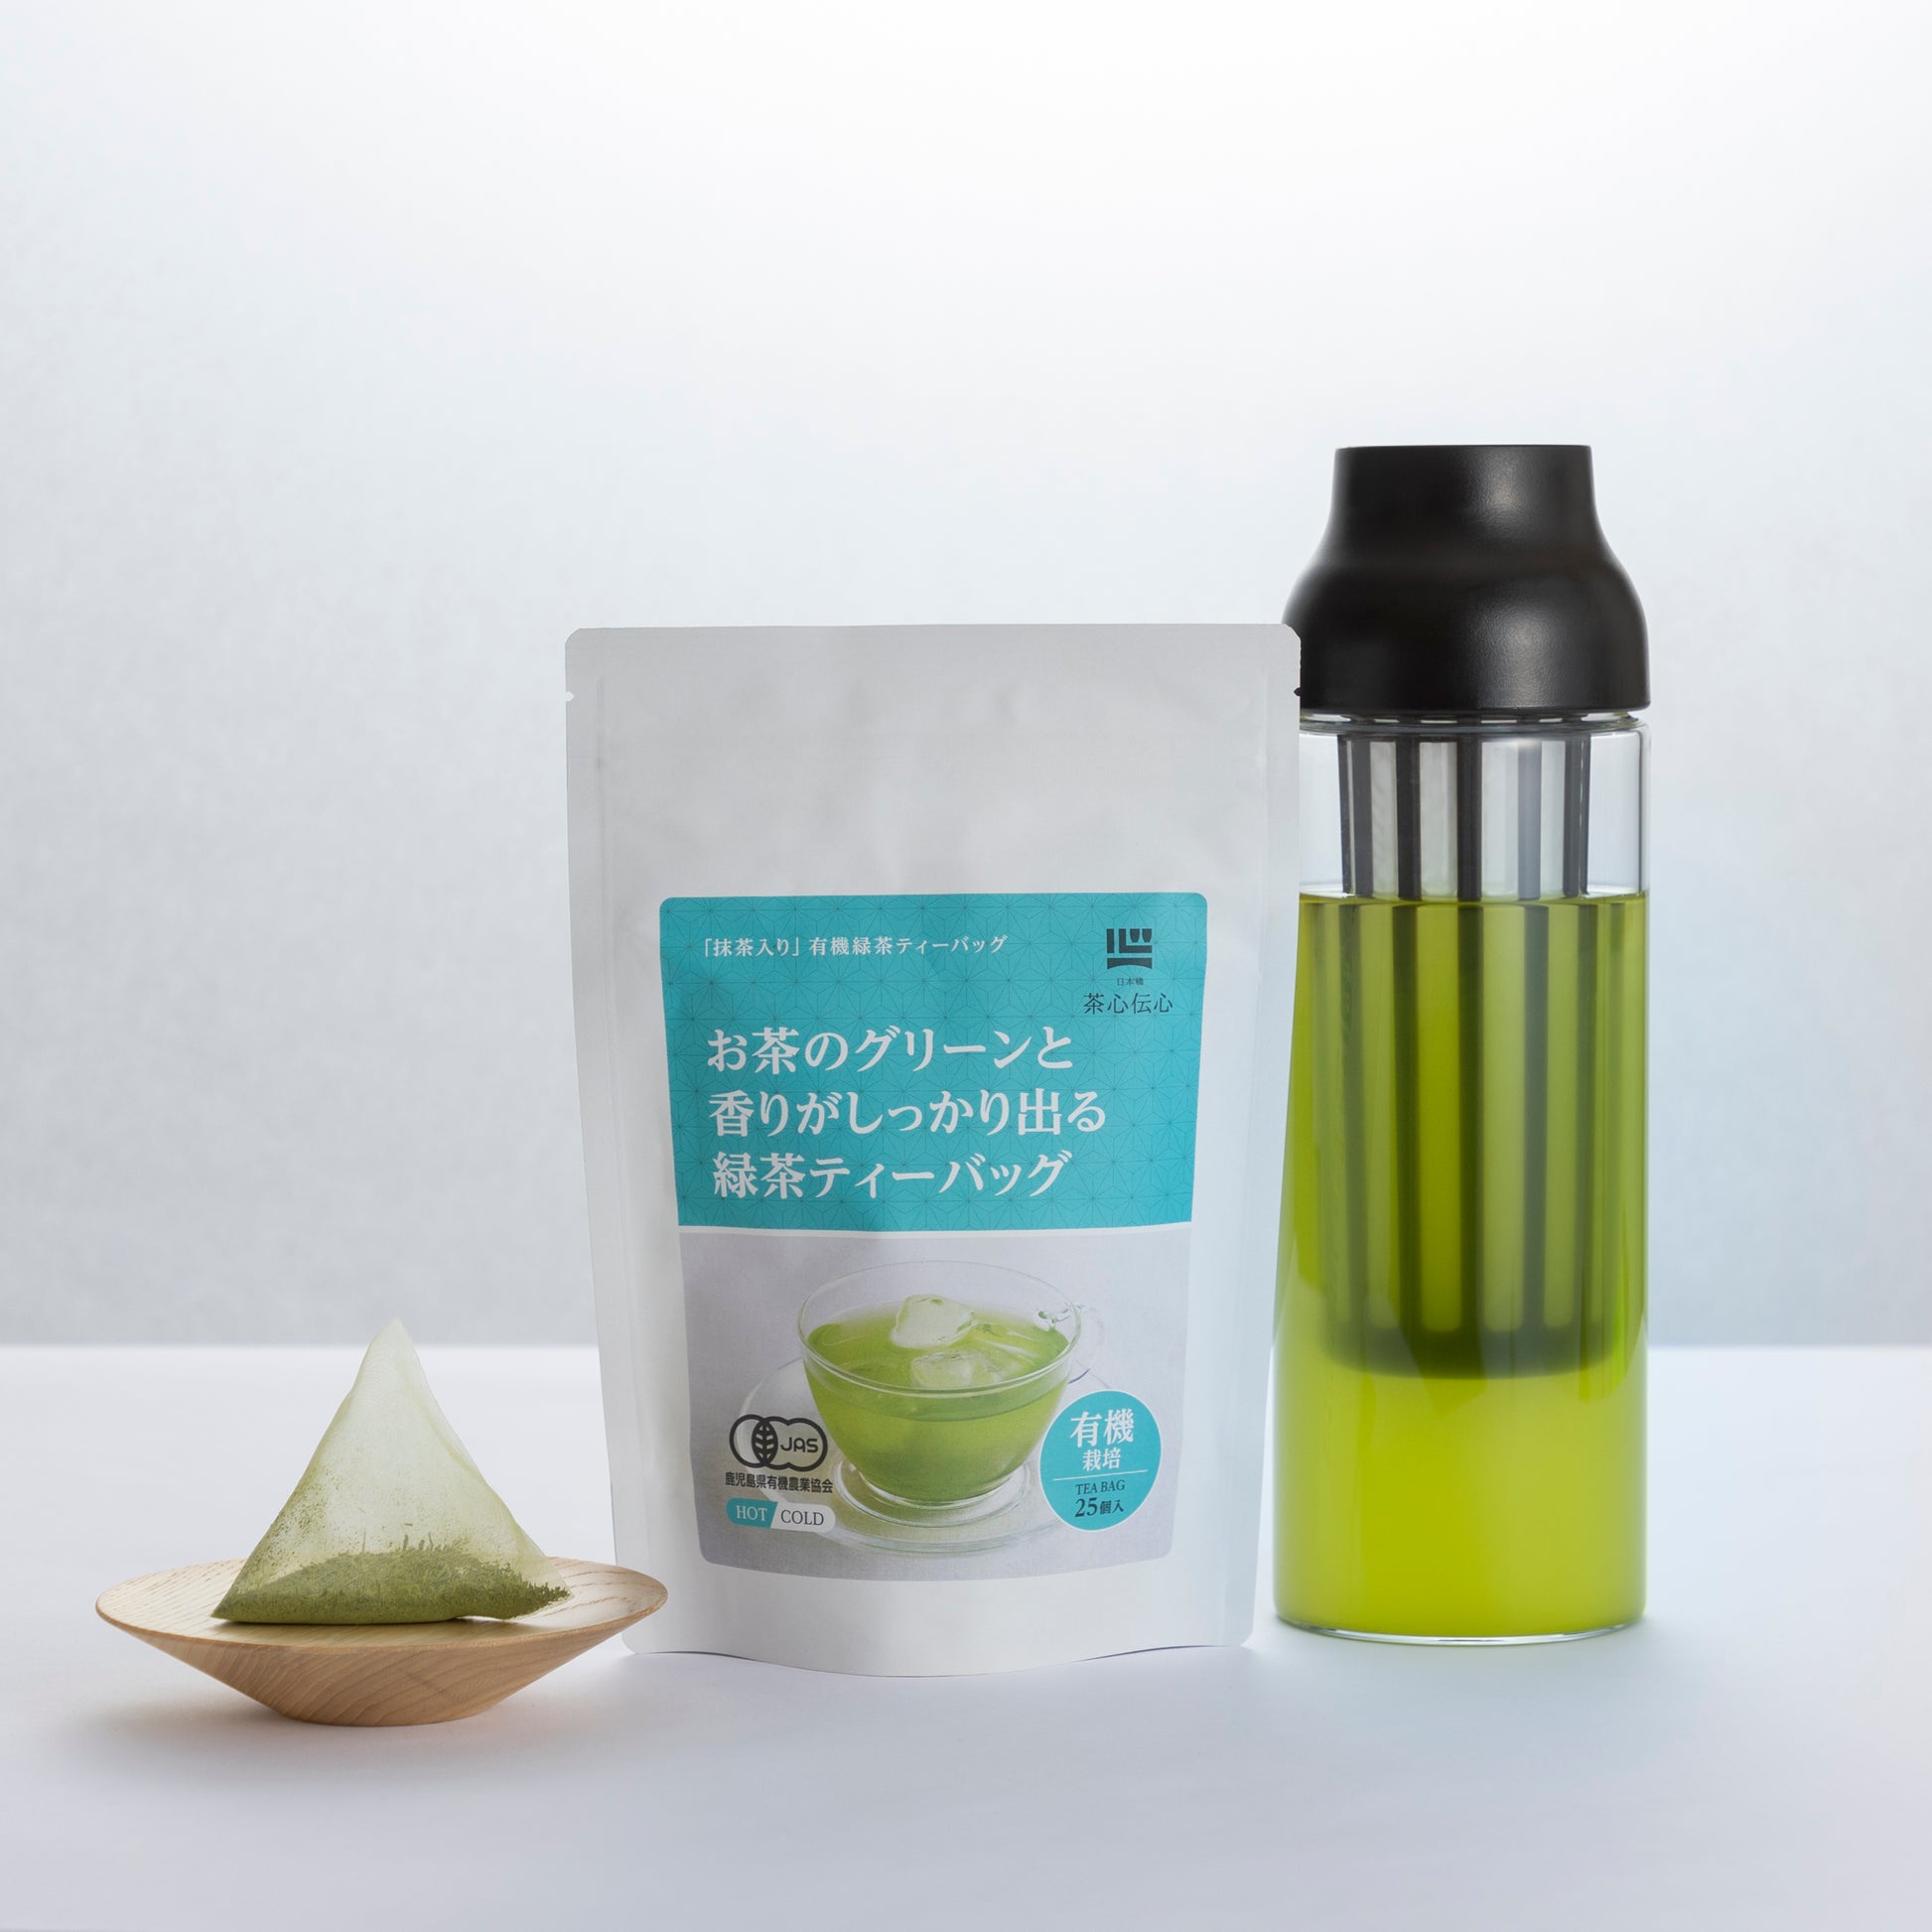 新発売 キューリグ サンマルク 英国 小川 プロント 緑茶 コーヒー